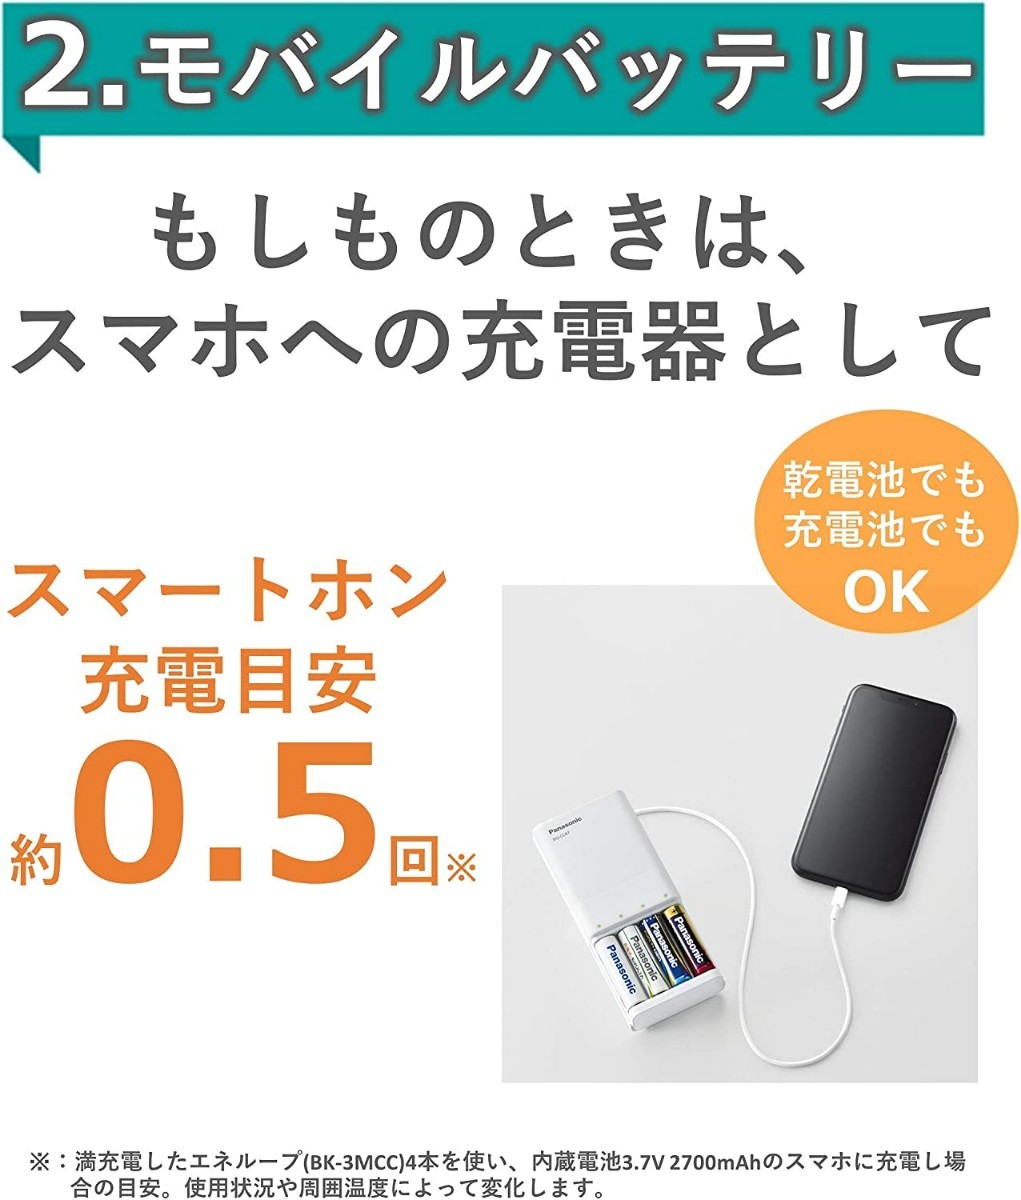 日本製 パナソニック 単3形 単4形 急速充電器 大容量モデル 最小容量2500mAh エネループ 充電池 USB 充電器 単3 単4 USB ホワイト 白